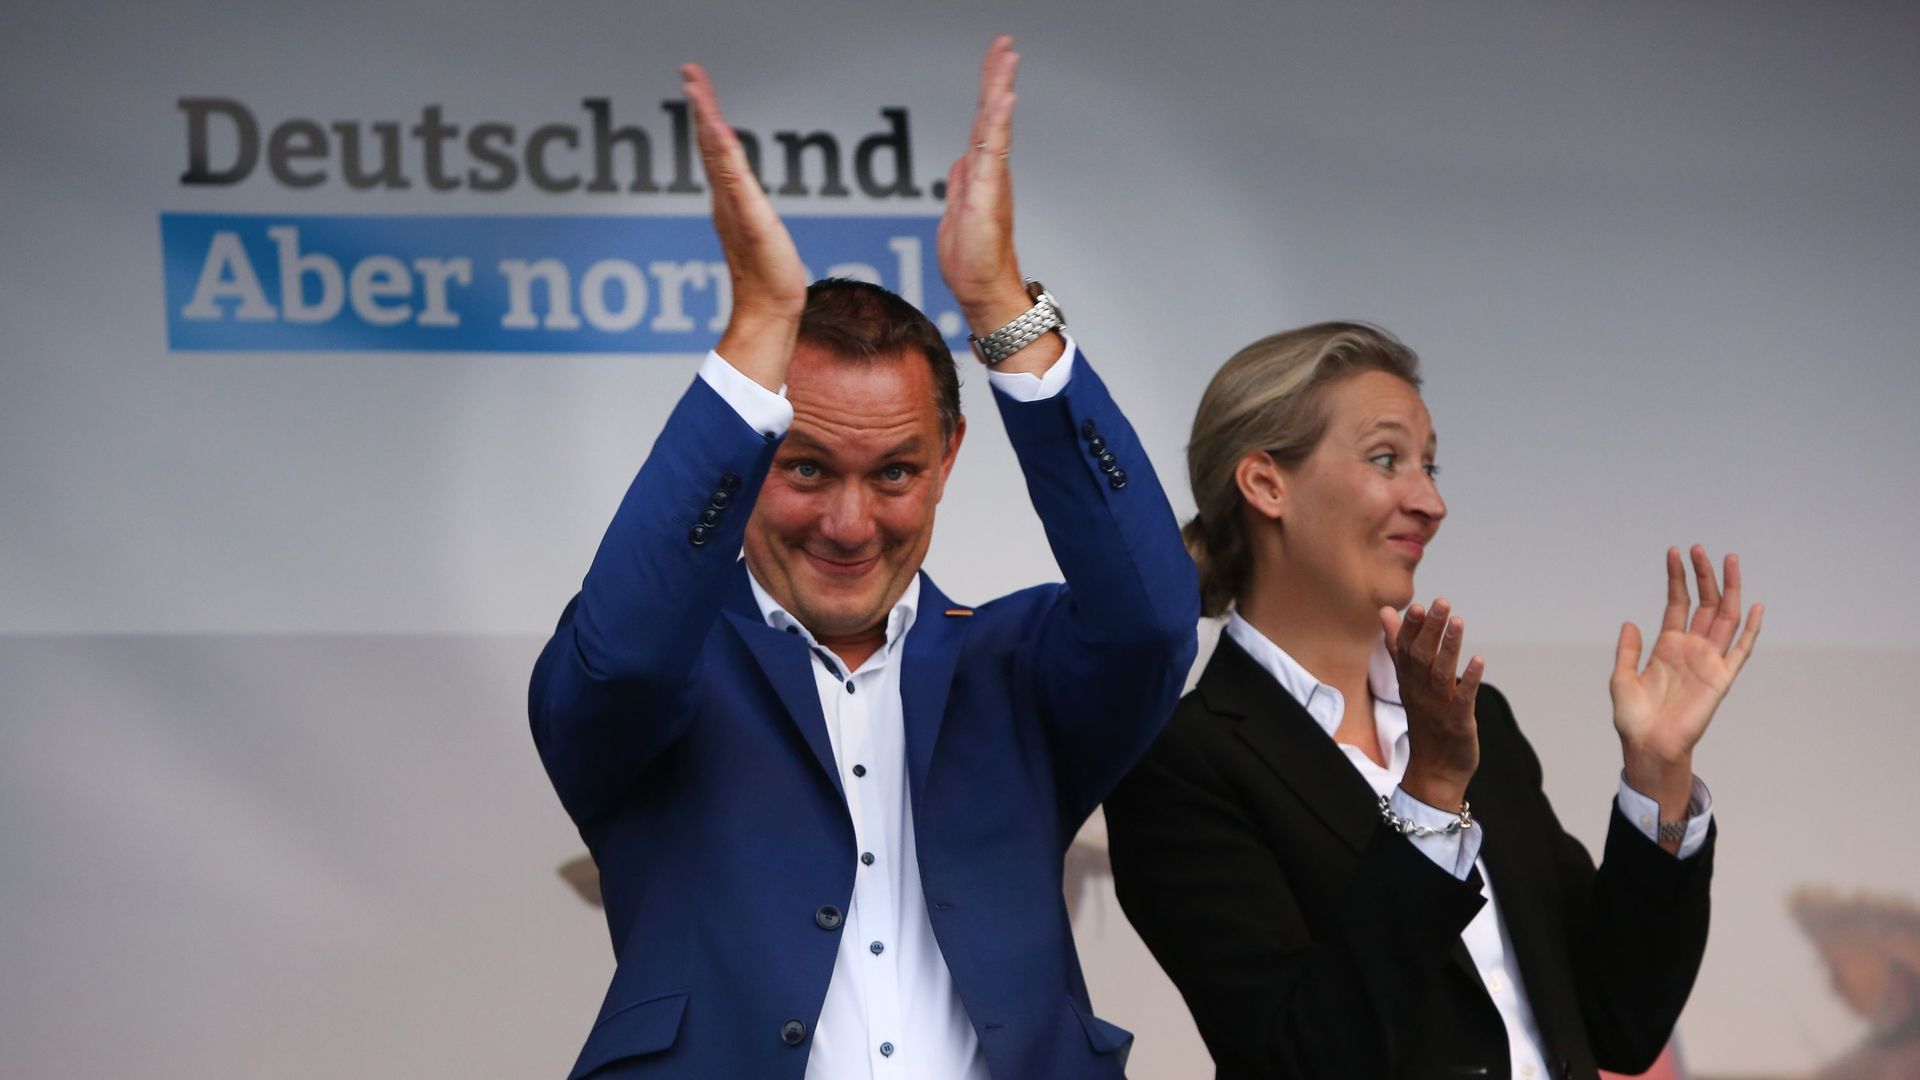 Tino Chrupalla (à gauche) and Alice Weidel, co-candidats du parti Alternative pour l'Allemagne (AfD), espèrent pouvoir applaudir à nouveau leurs partisans lors des échéances à venir.  
